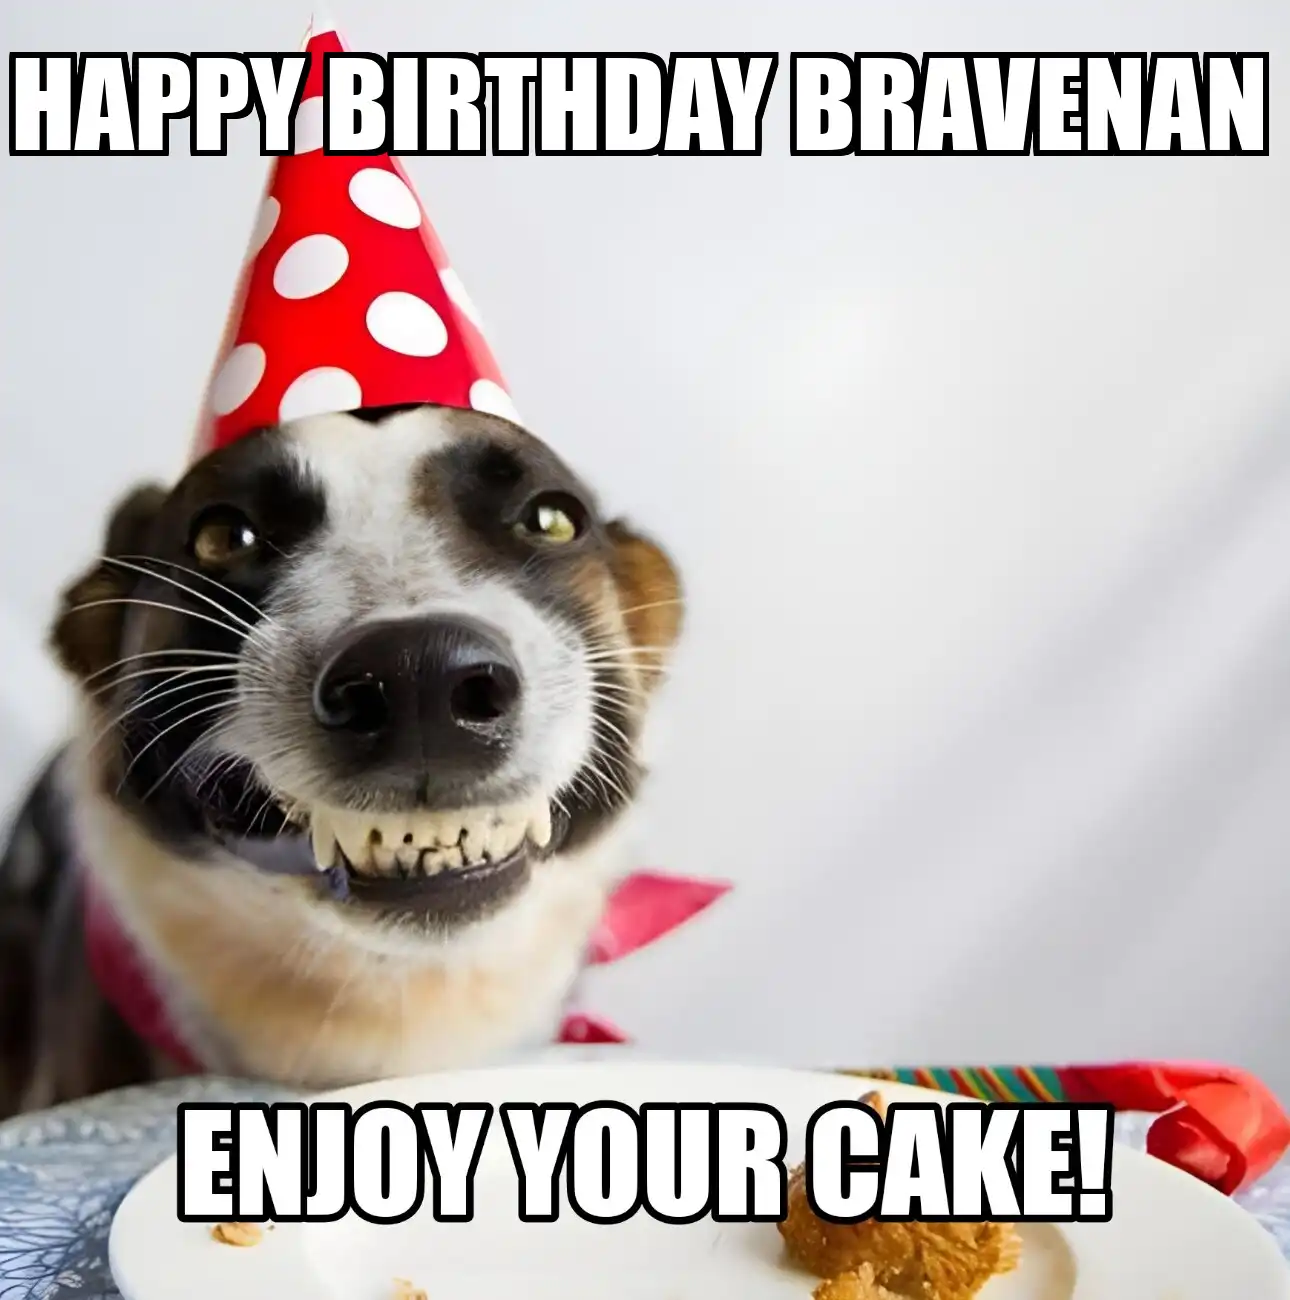 Happy Birthday Bravenan Enjoy Your Cake Dog Meme